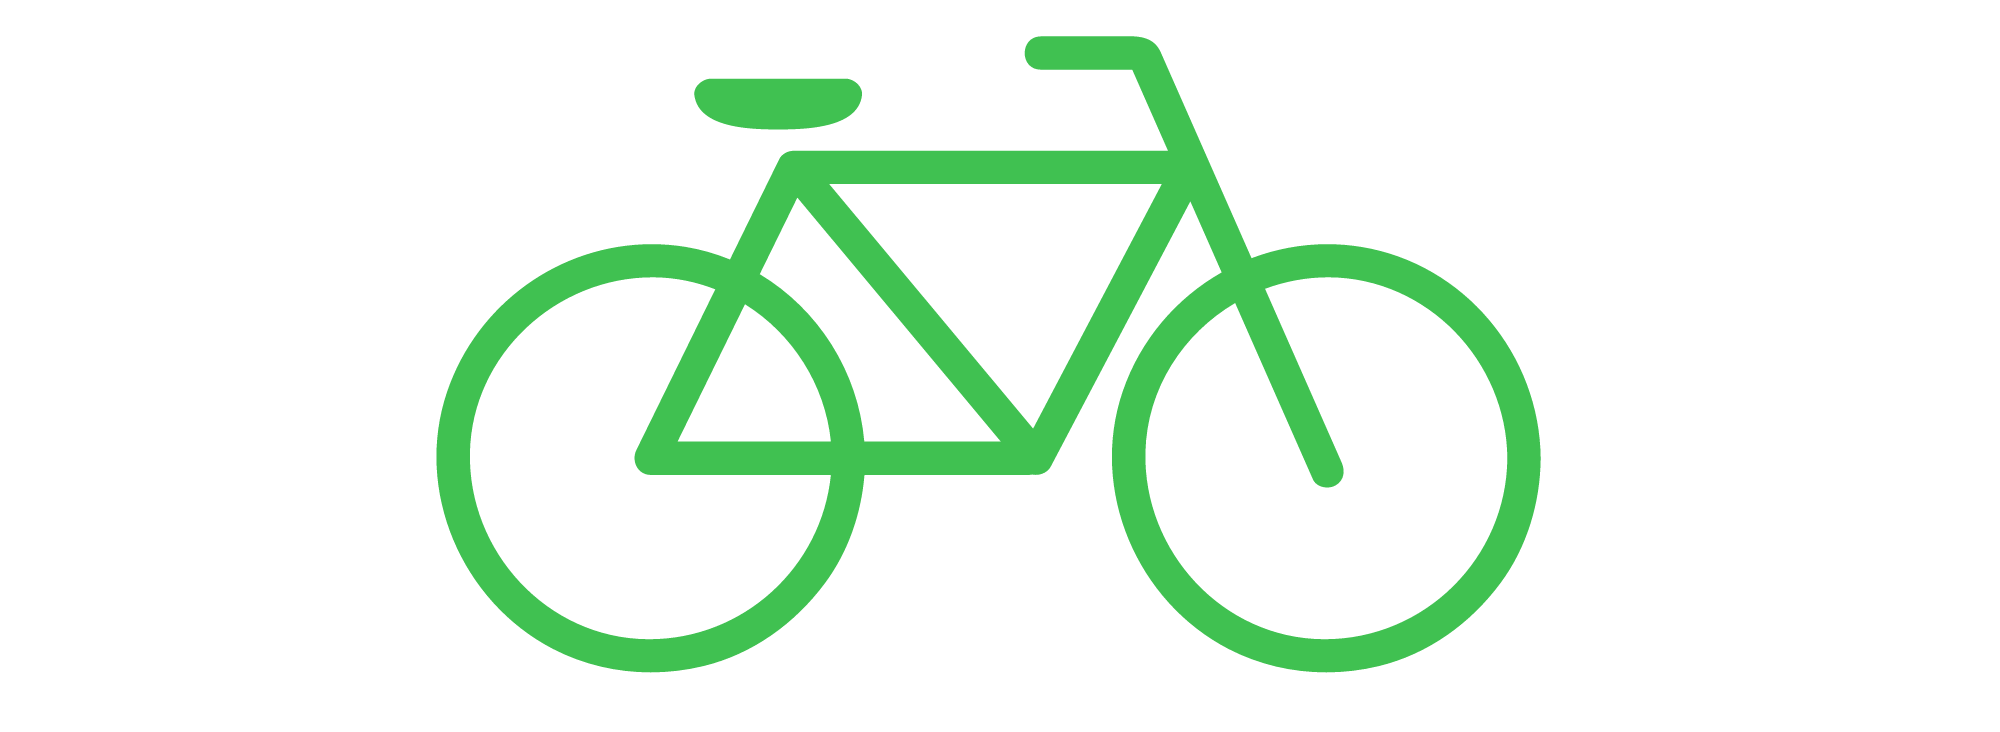 Clipart bike green bike, Clipart bike green bike Transparent